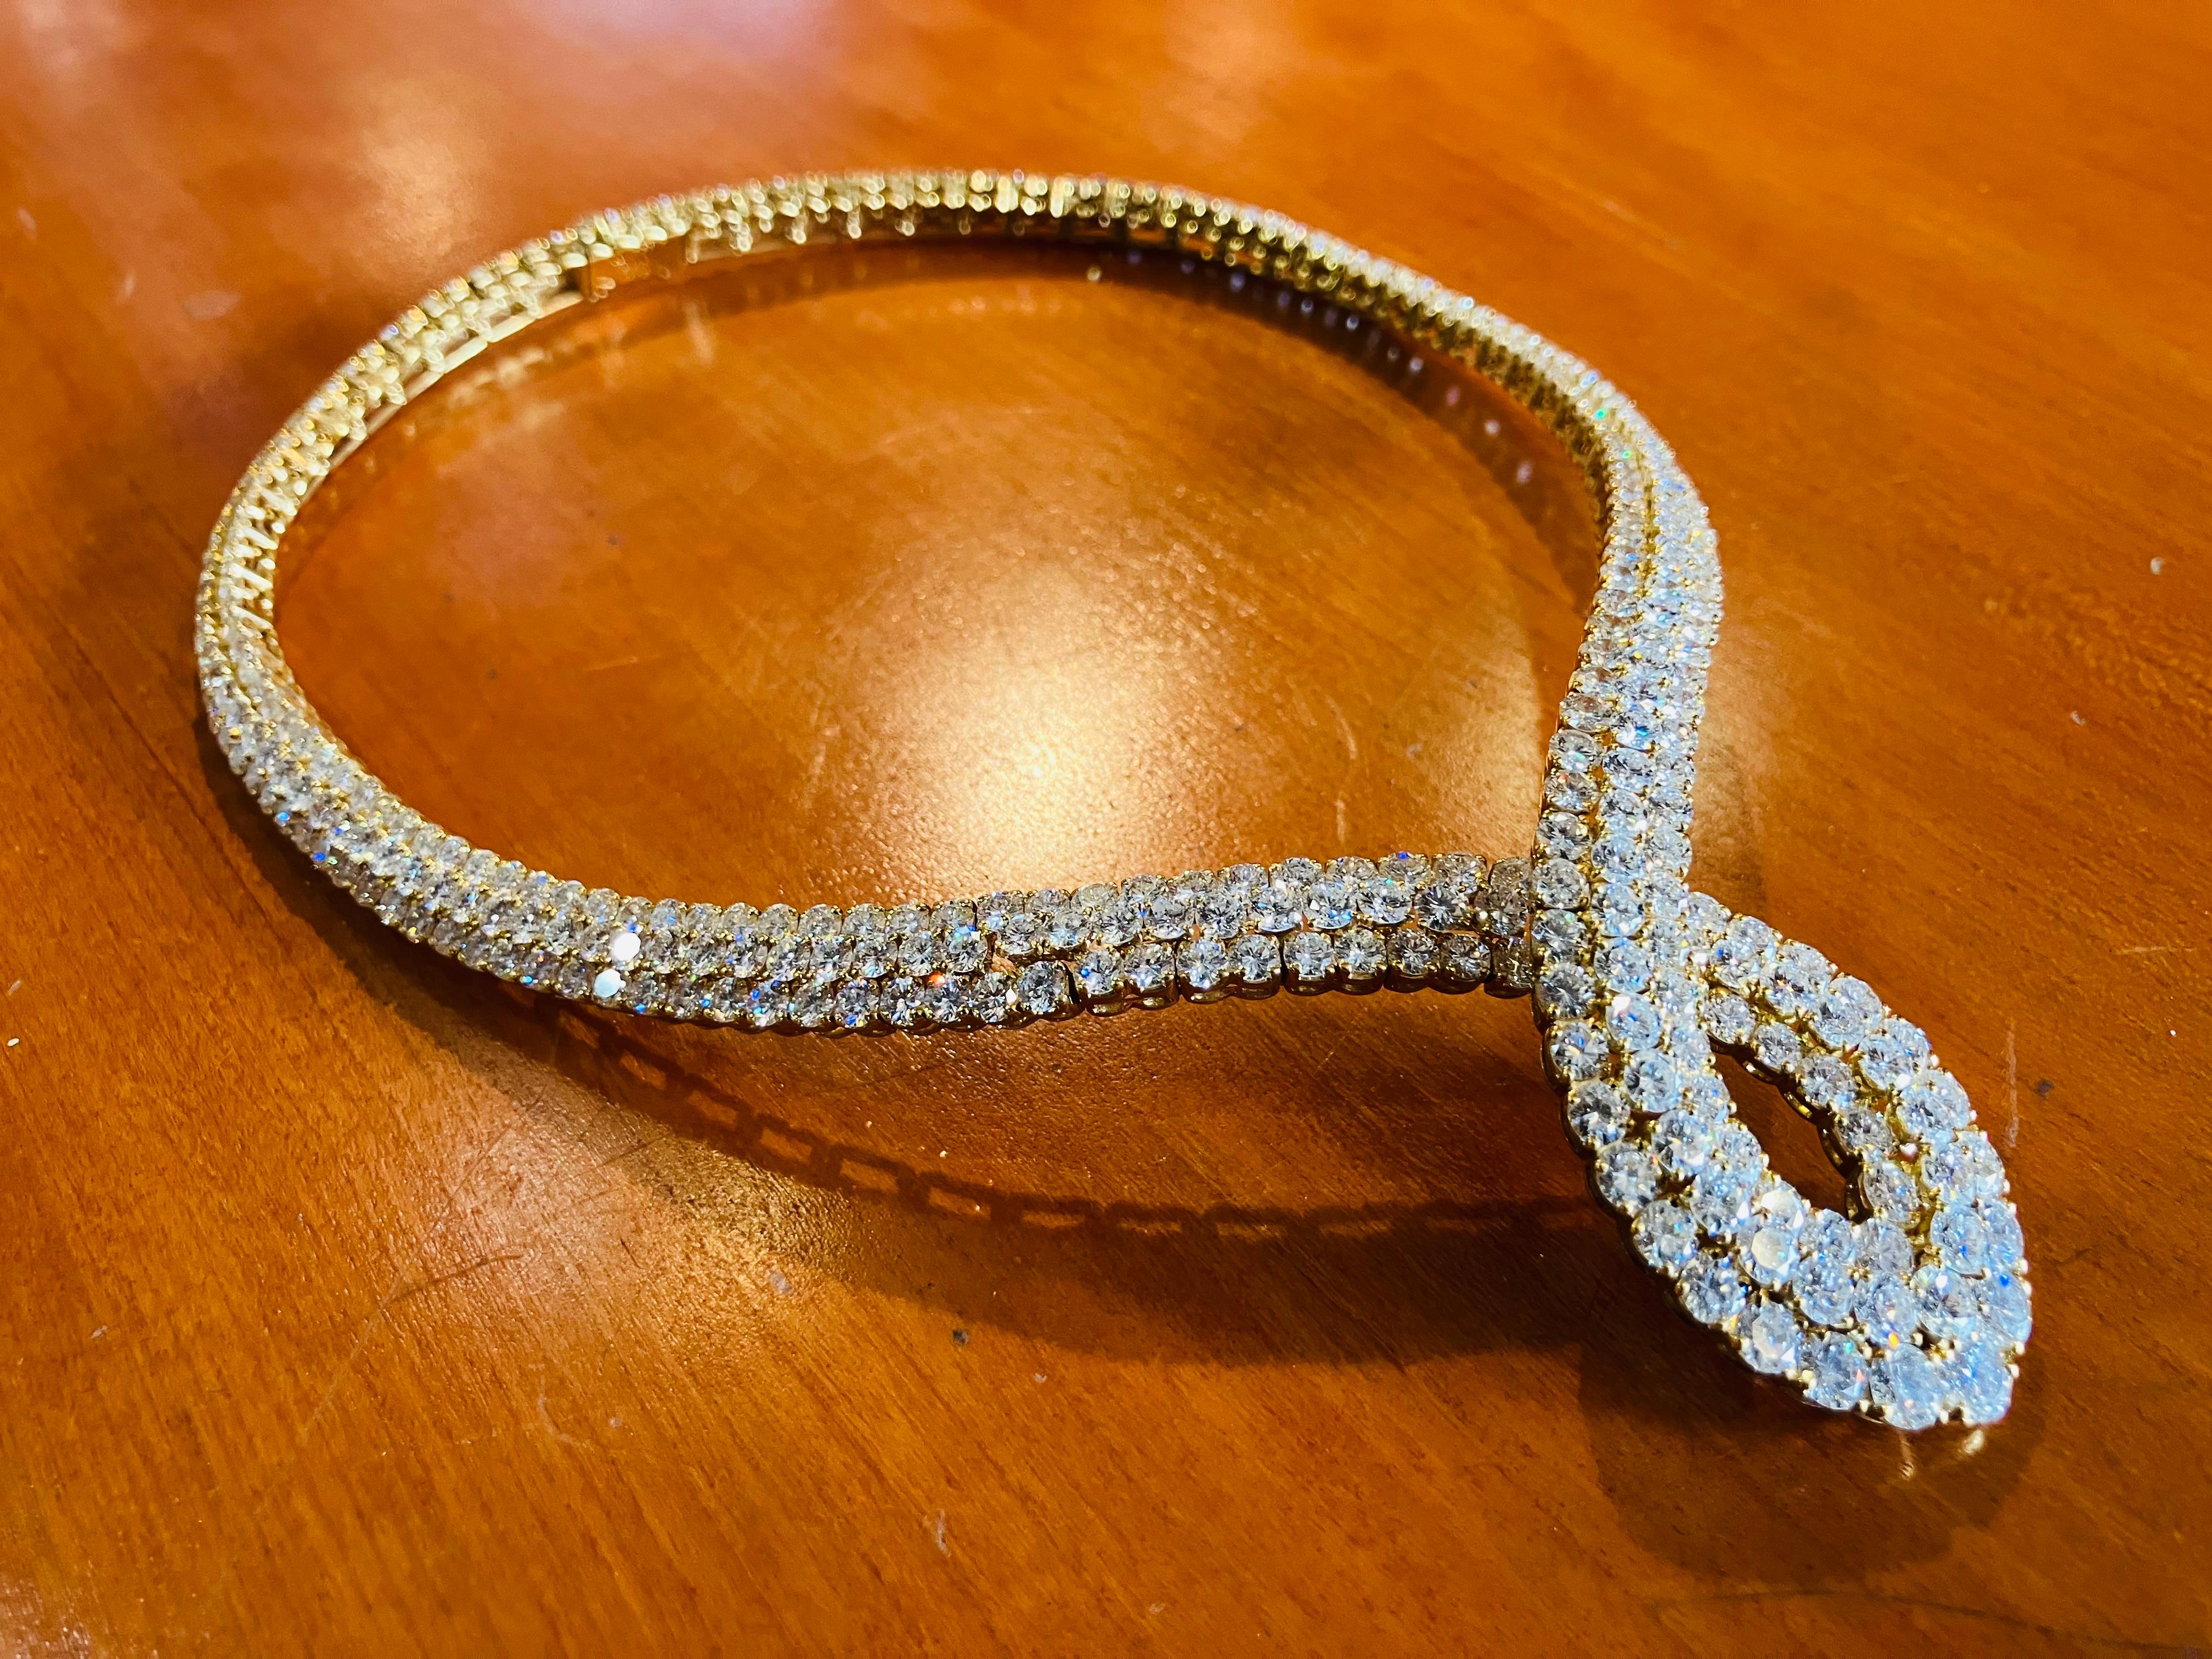 Magnificent Van Cleef & Arpels  Diamond Necklace.
Signed Van Cleef & Arpels. 